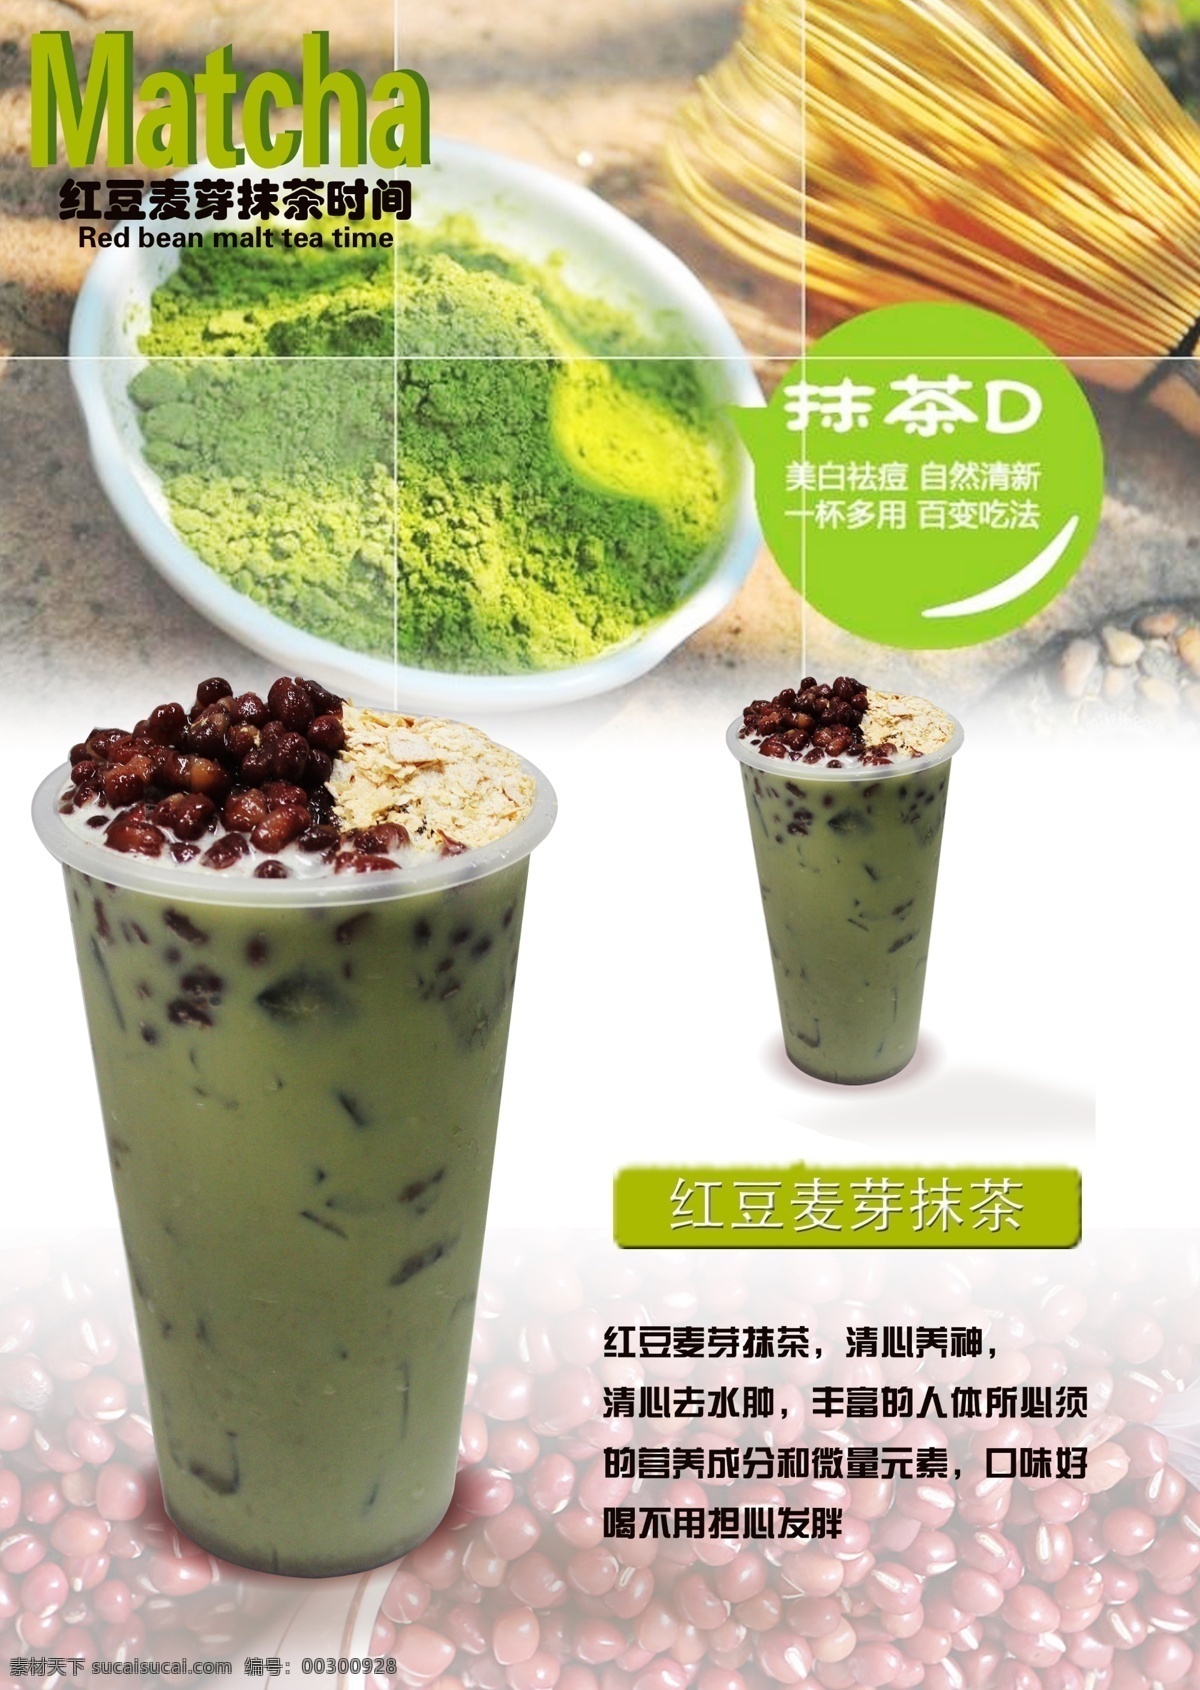 红豆胚芽抹茶 饮品海报 饮品 奶茶 咖啡 果汁海报 饮料海报 饮品素材 广告设计模板